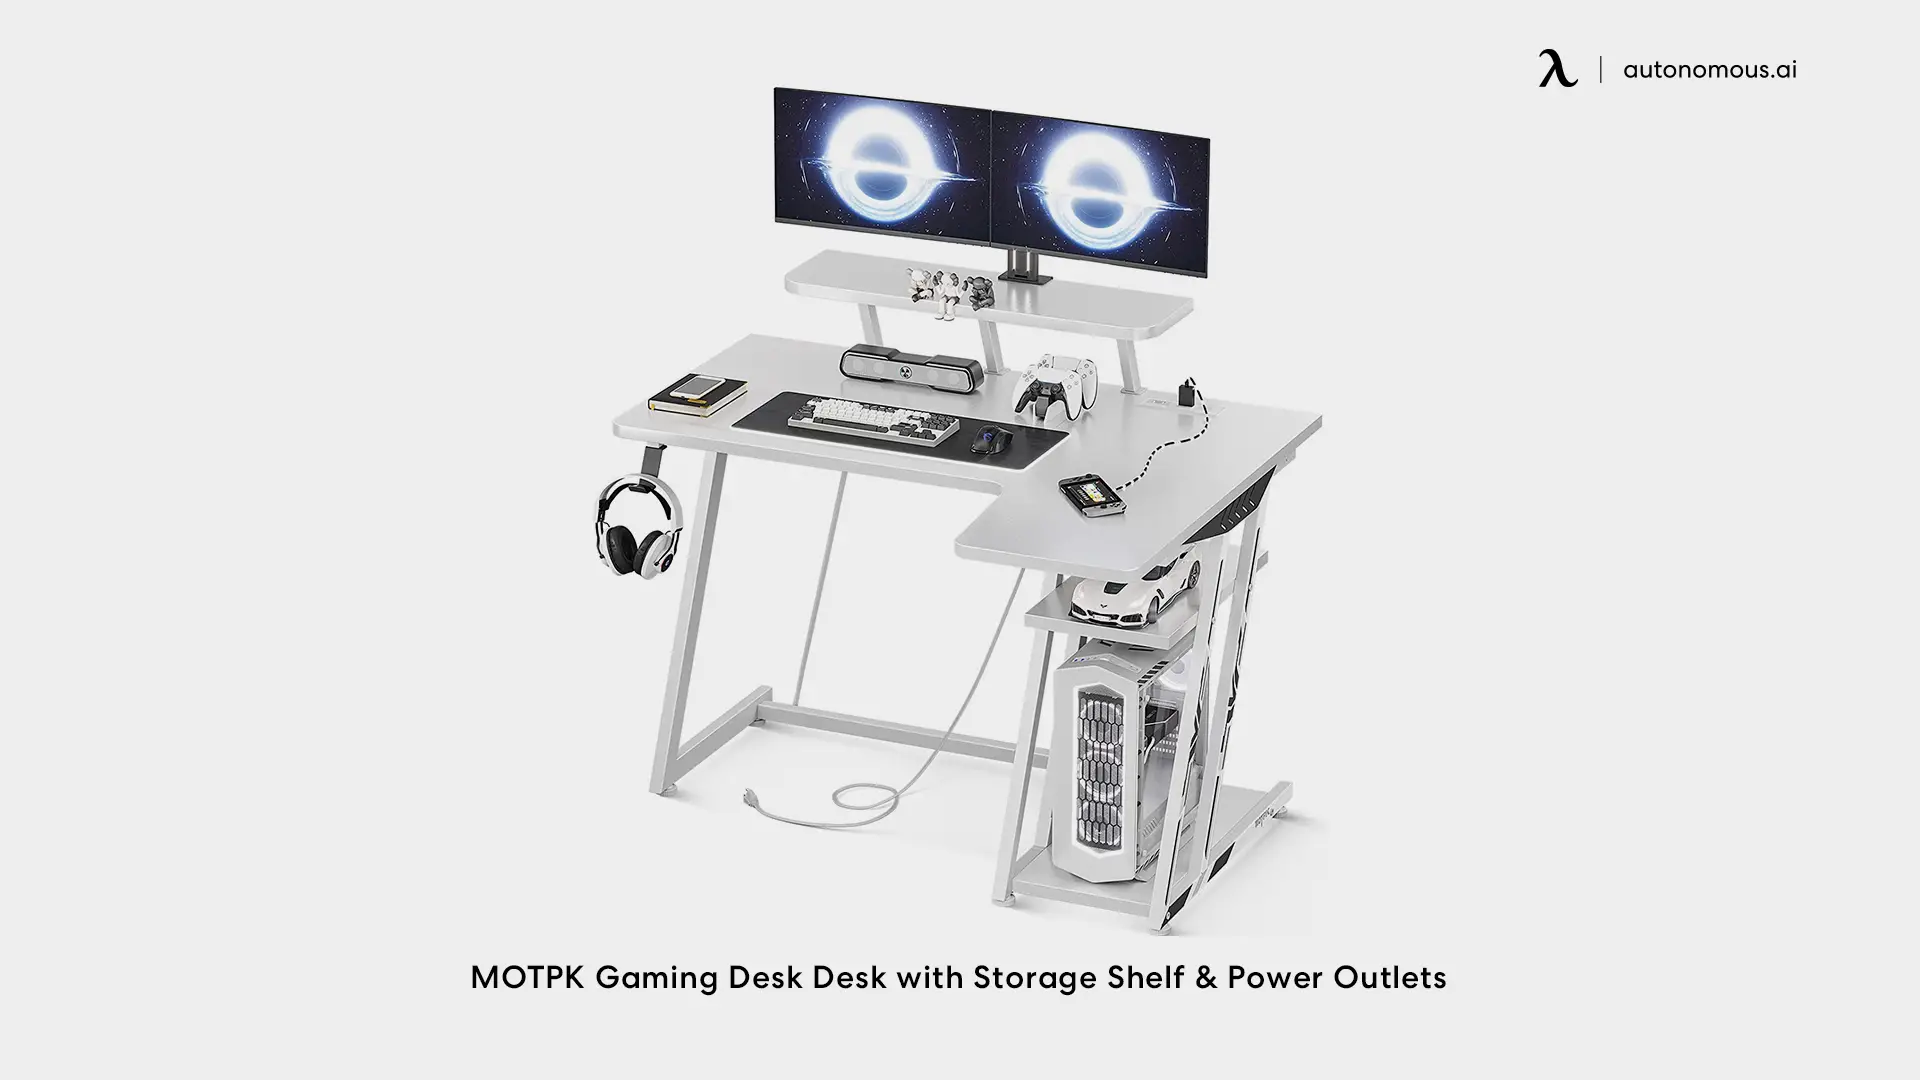 MOTPK Gaming Desk Desk with Storage Shelf & Power Outlets